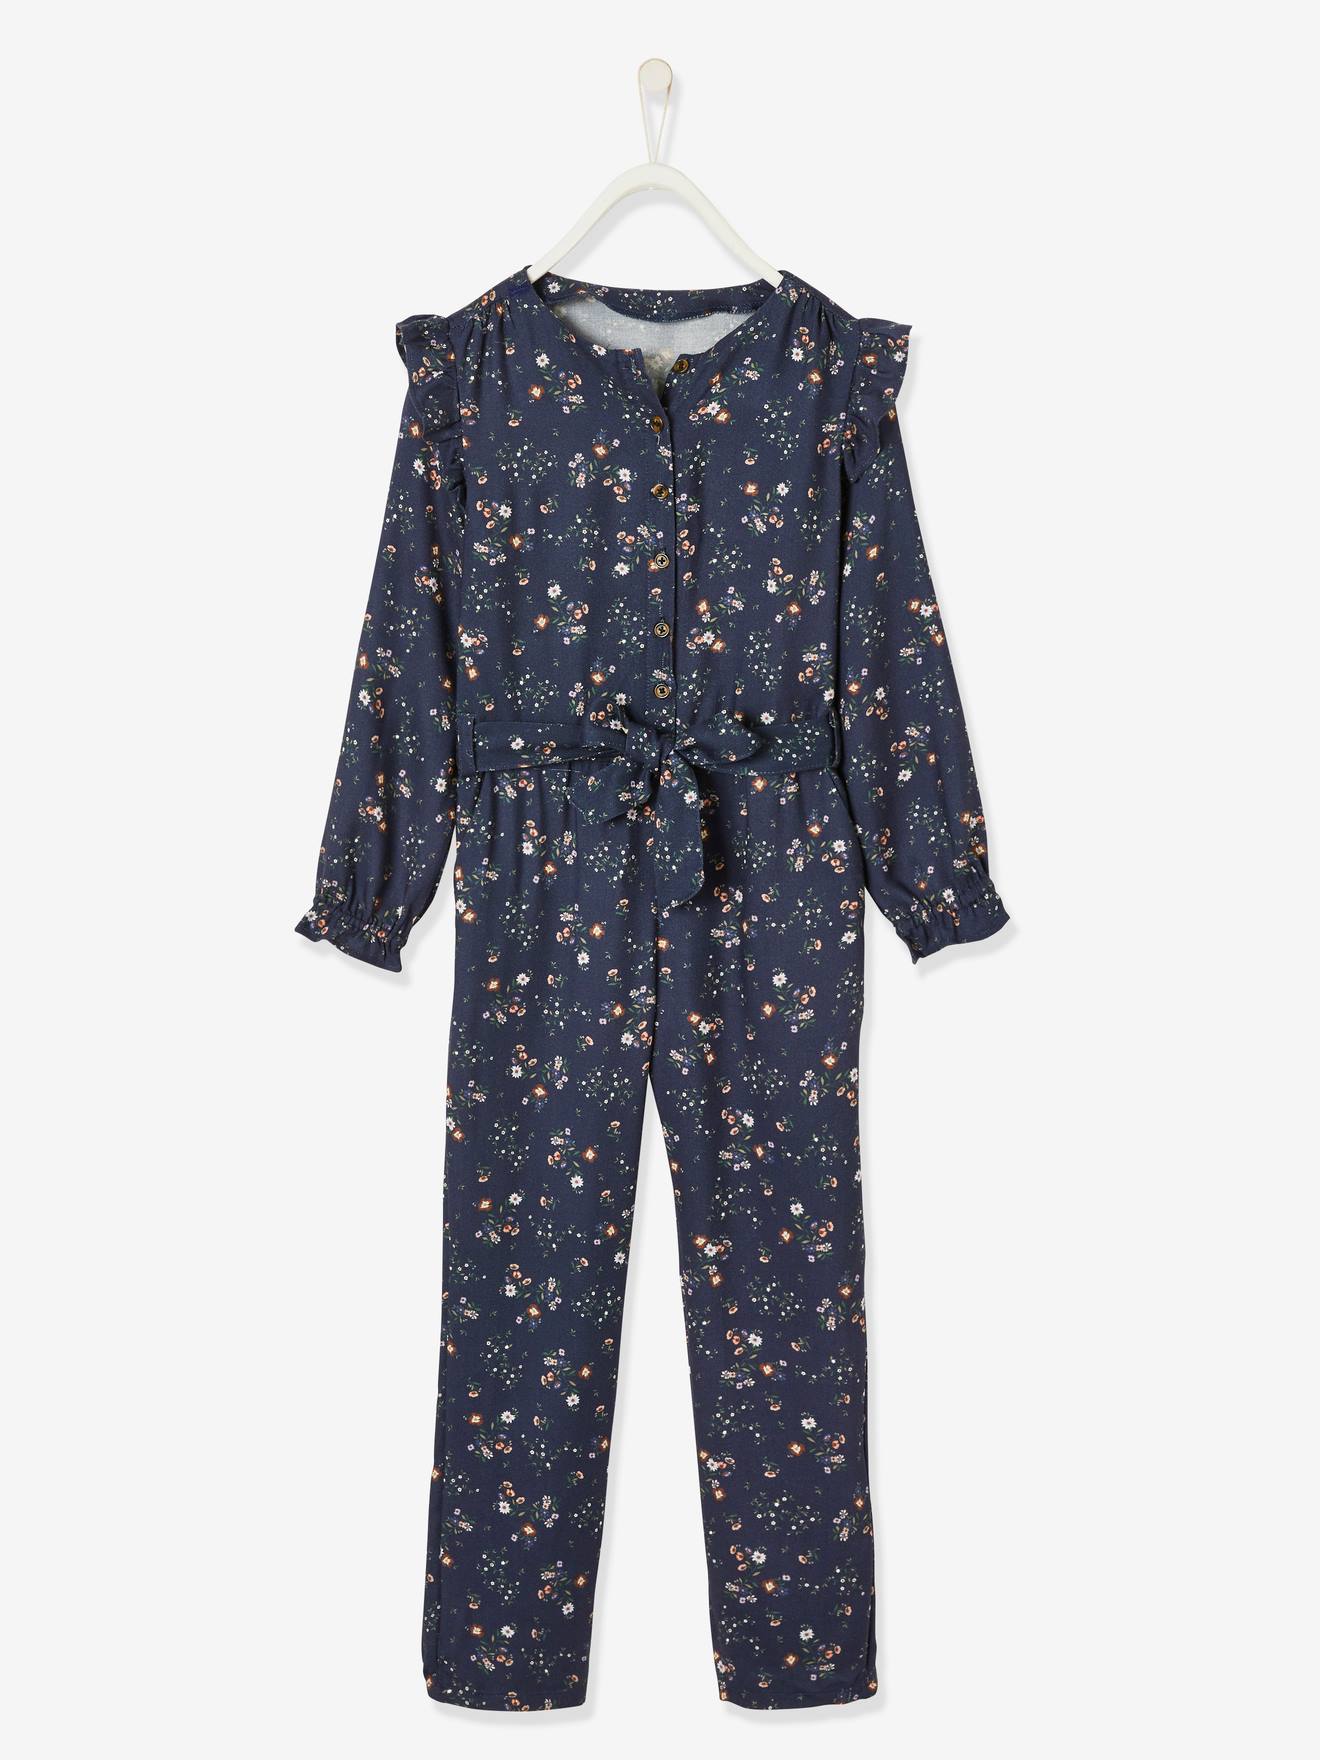 Floral Jumpsuit for Girls dark blue/print